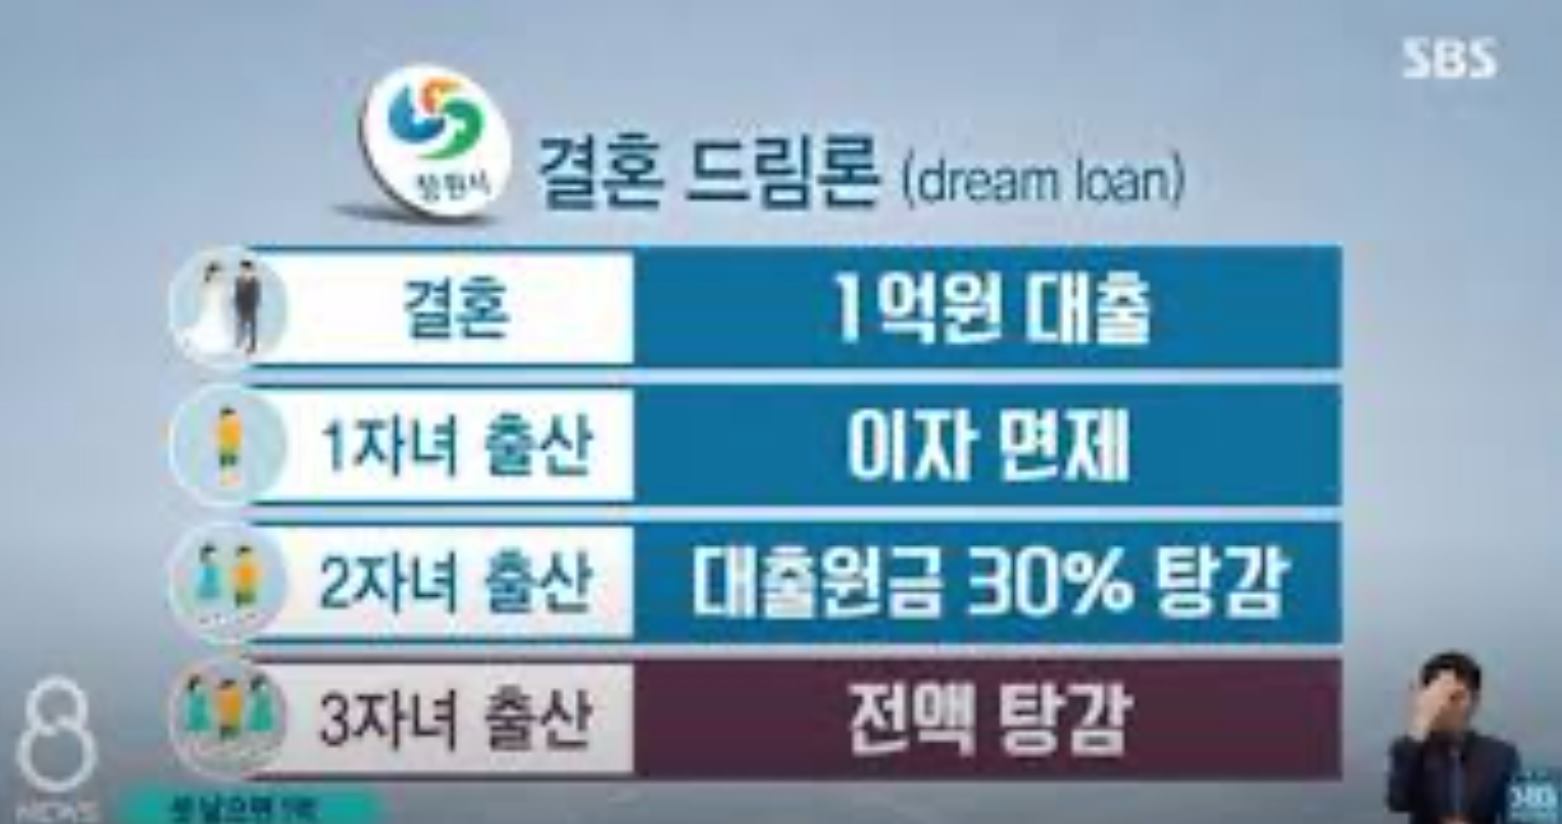 Dream Loan - 'Khoản vay trong mơ' là chính sách của thành phố Changwon trong năm mới 2021.